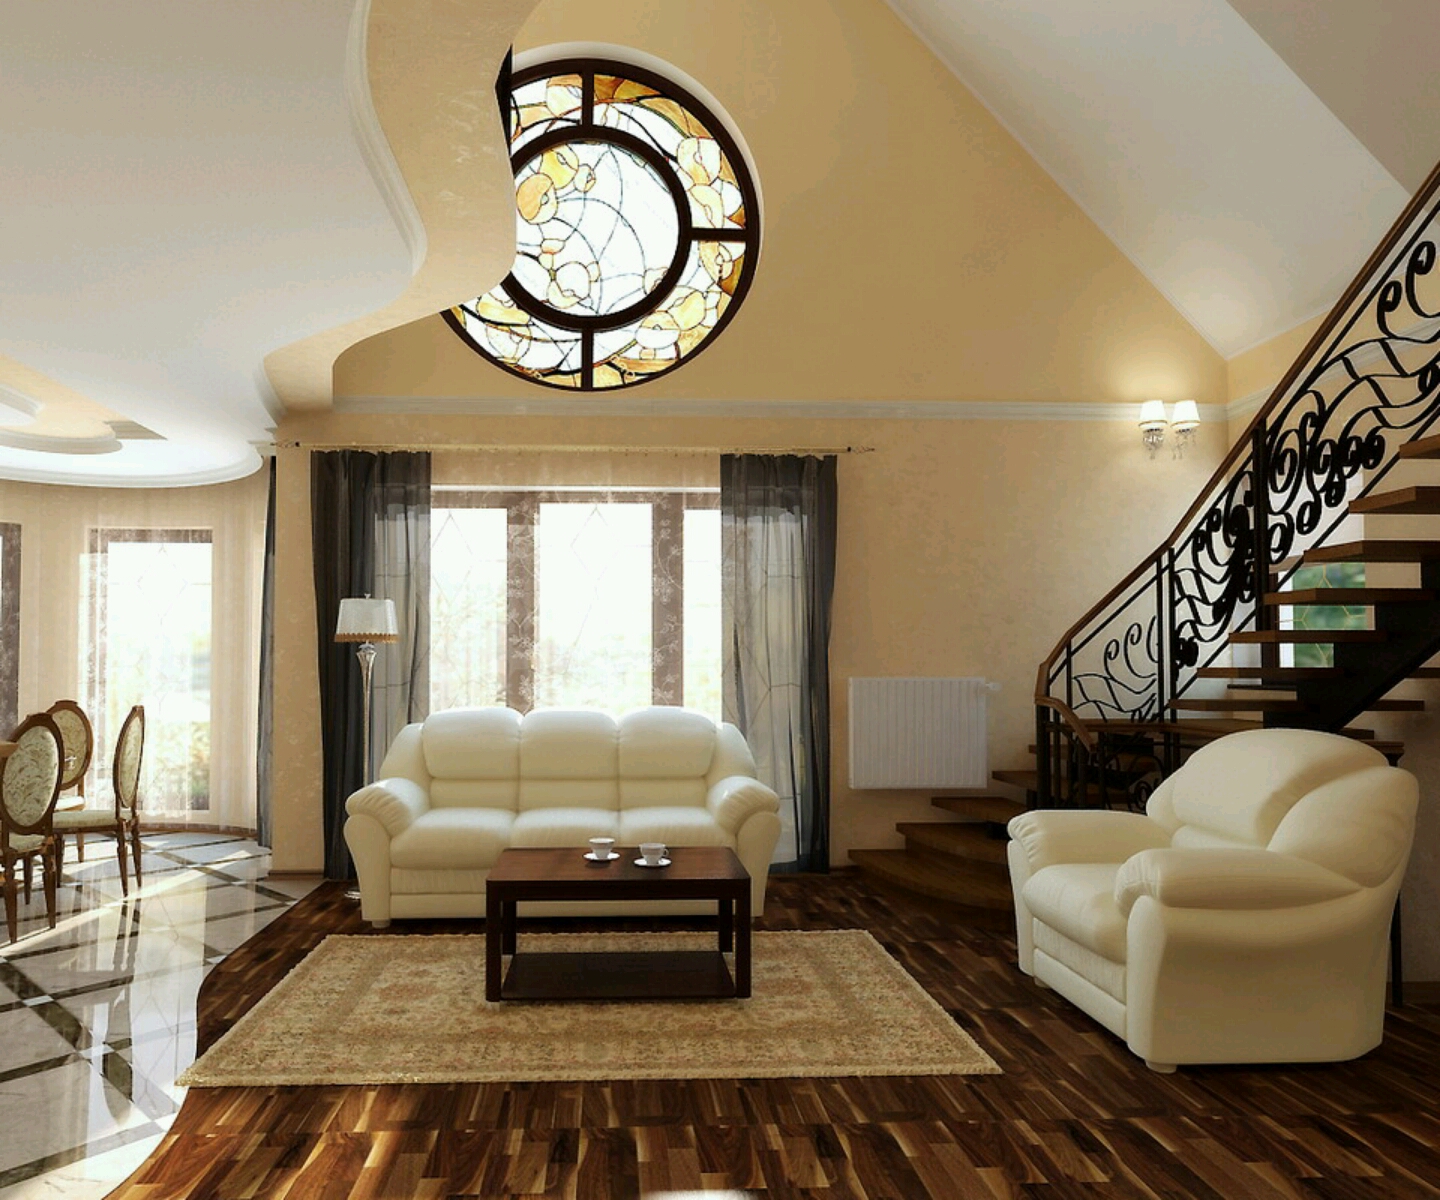 Modern+living+rooms+interior+designs+ideas.+(4).jpg